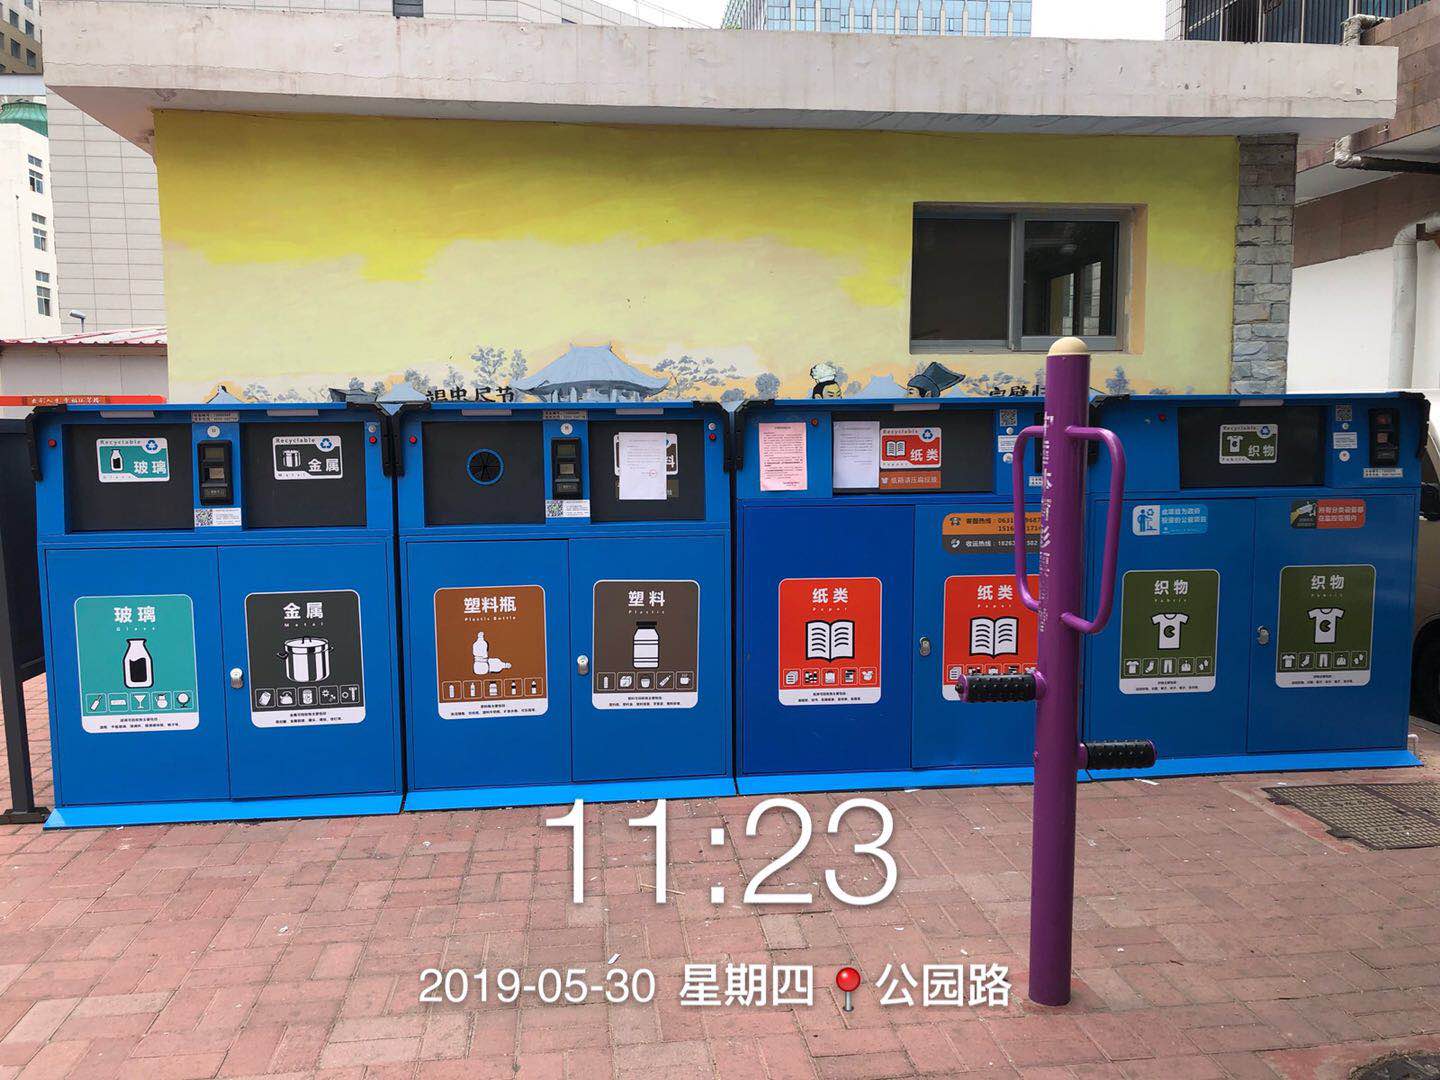 智能垃圾分类箱,上海智能垃圾分类箱,智能垃圾分类箱功能,上海智能垃圾分类箱功能